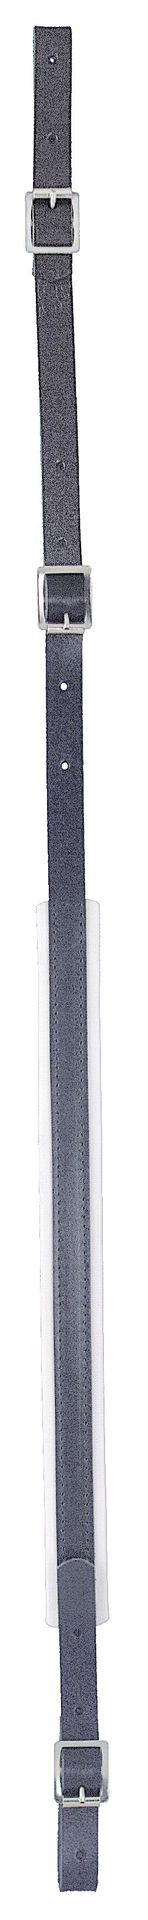 Tenorhorn-Trageriemen 35 mm, Leder mit 2x Schlaufe, Tragegurt